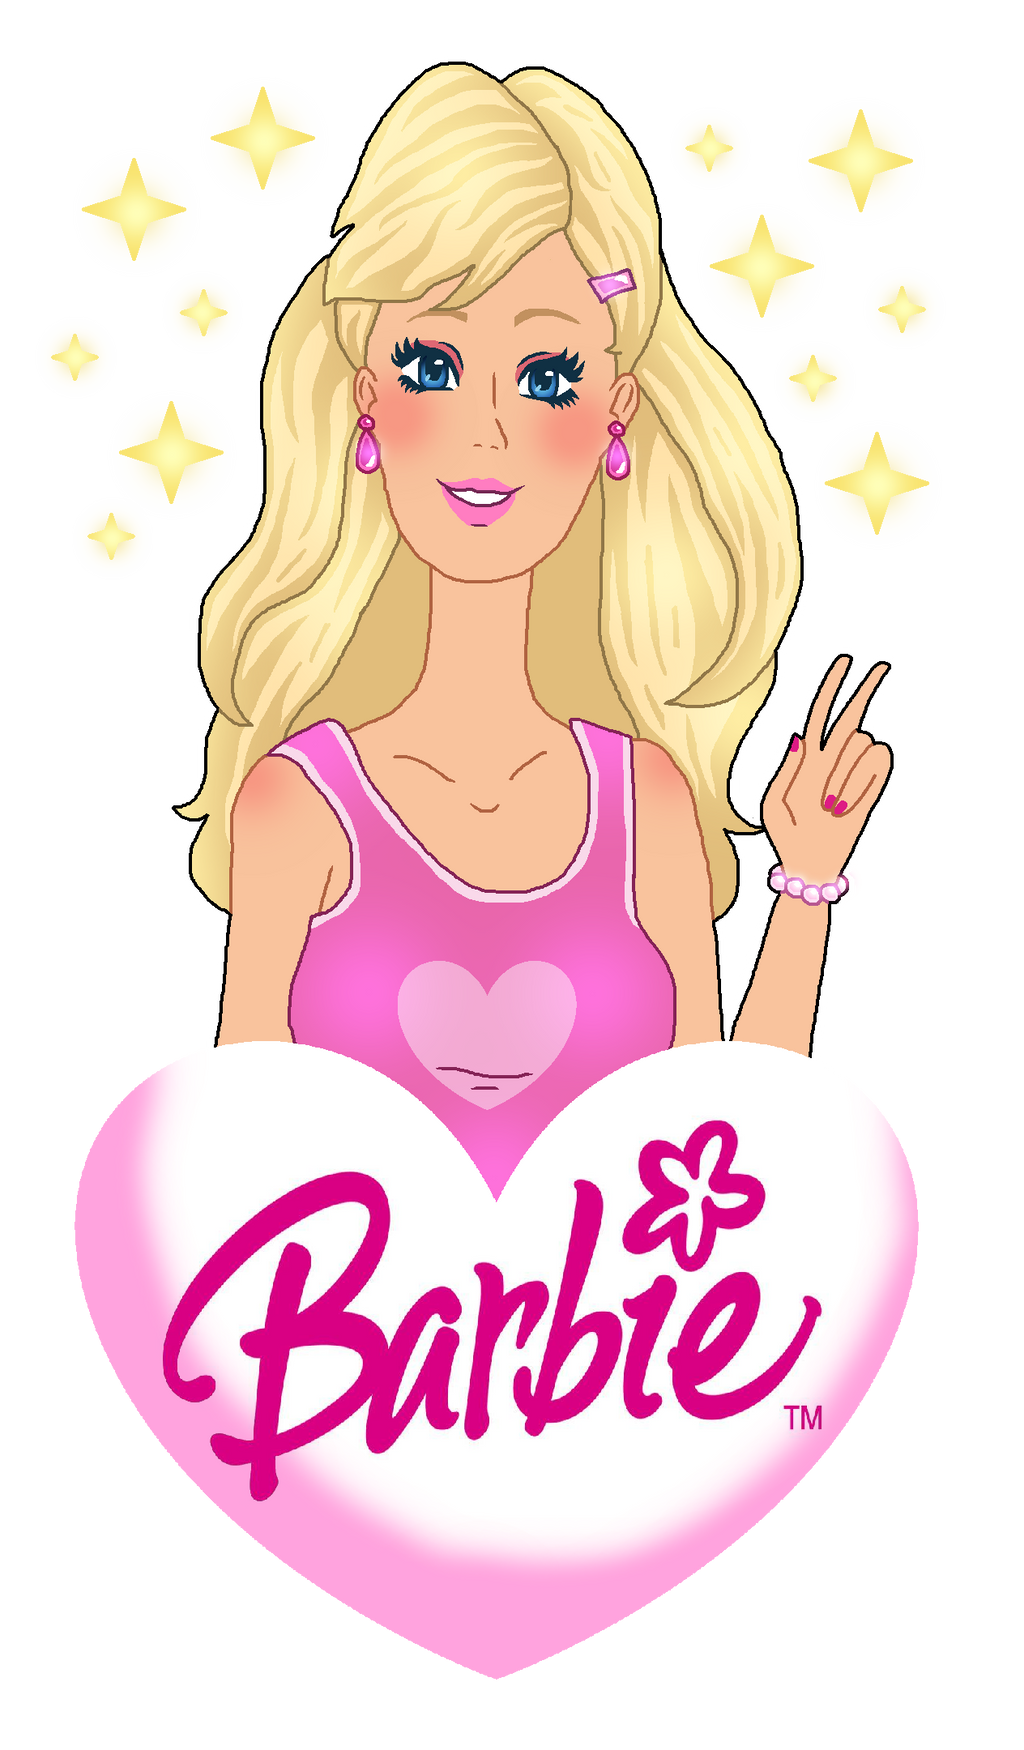 køretøj enhed ulækkert I'm a Barbie Girl! by SparkleStar12 on DeviantArt